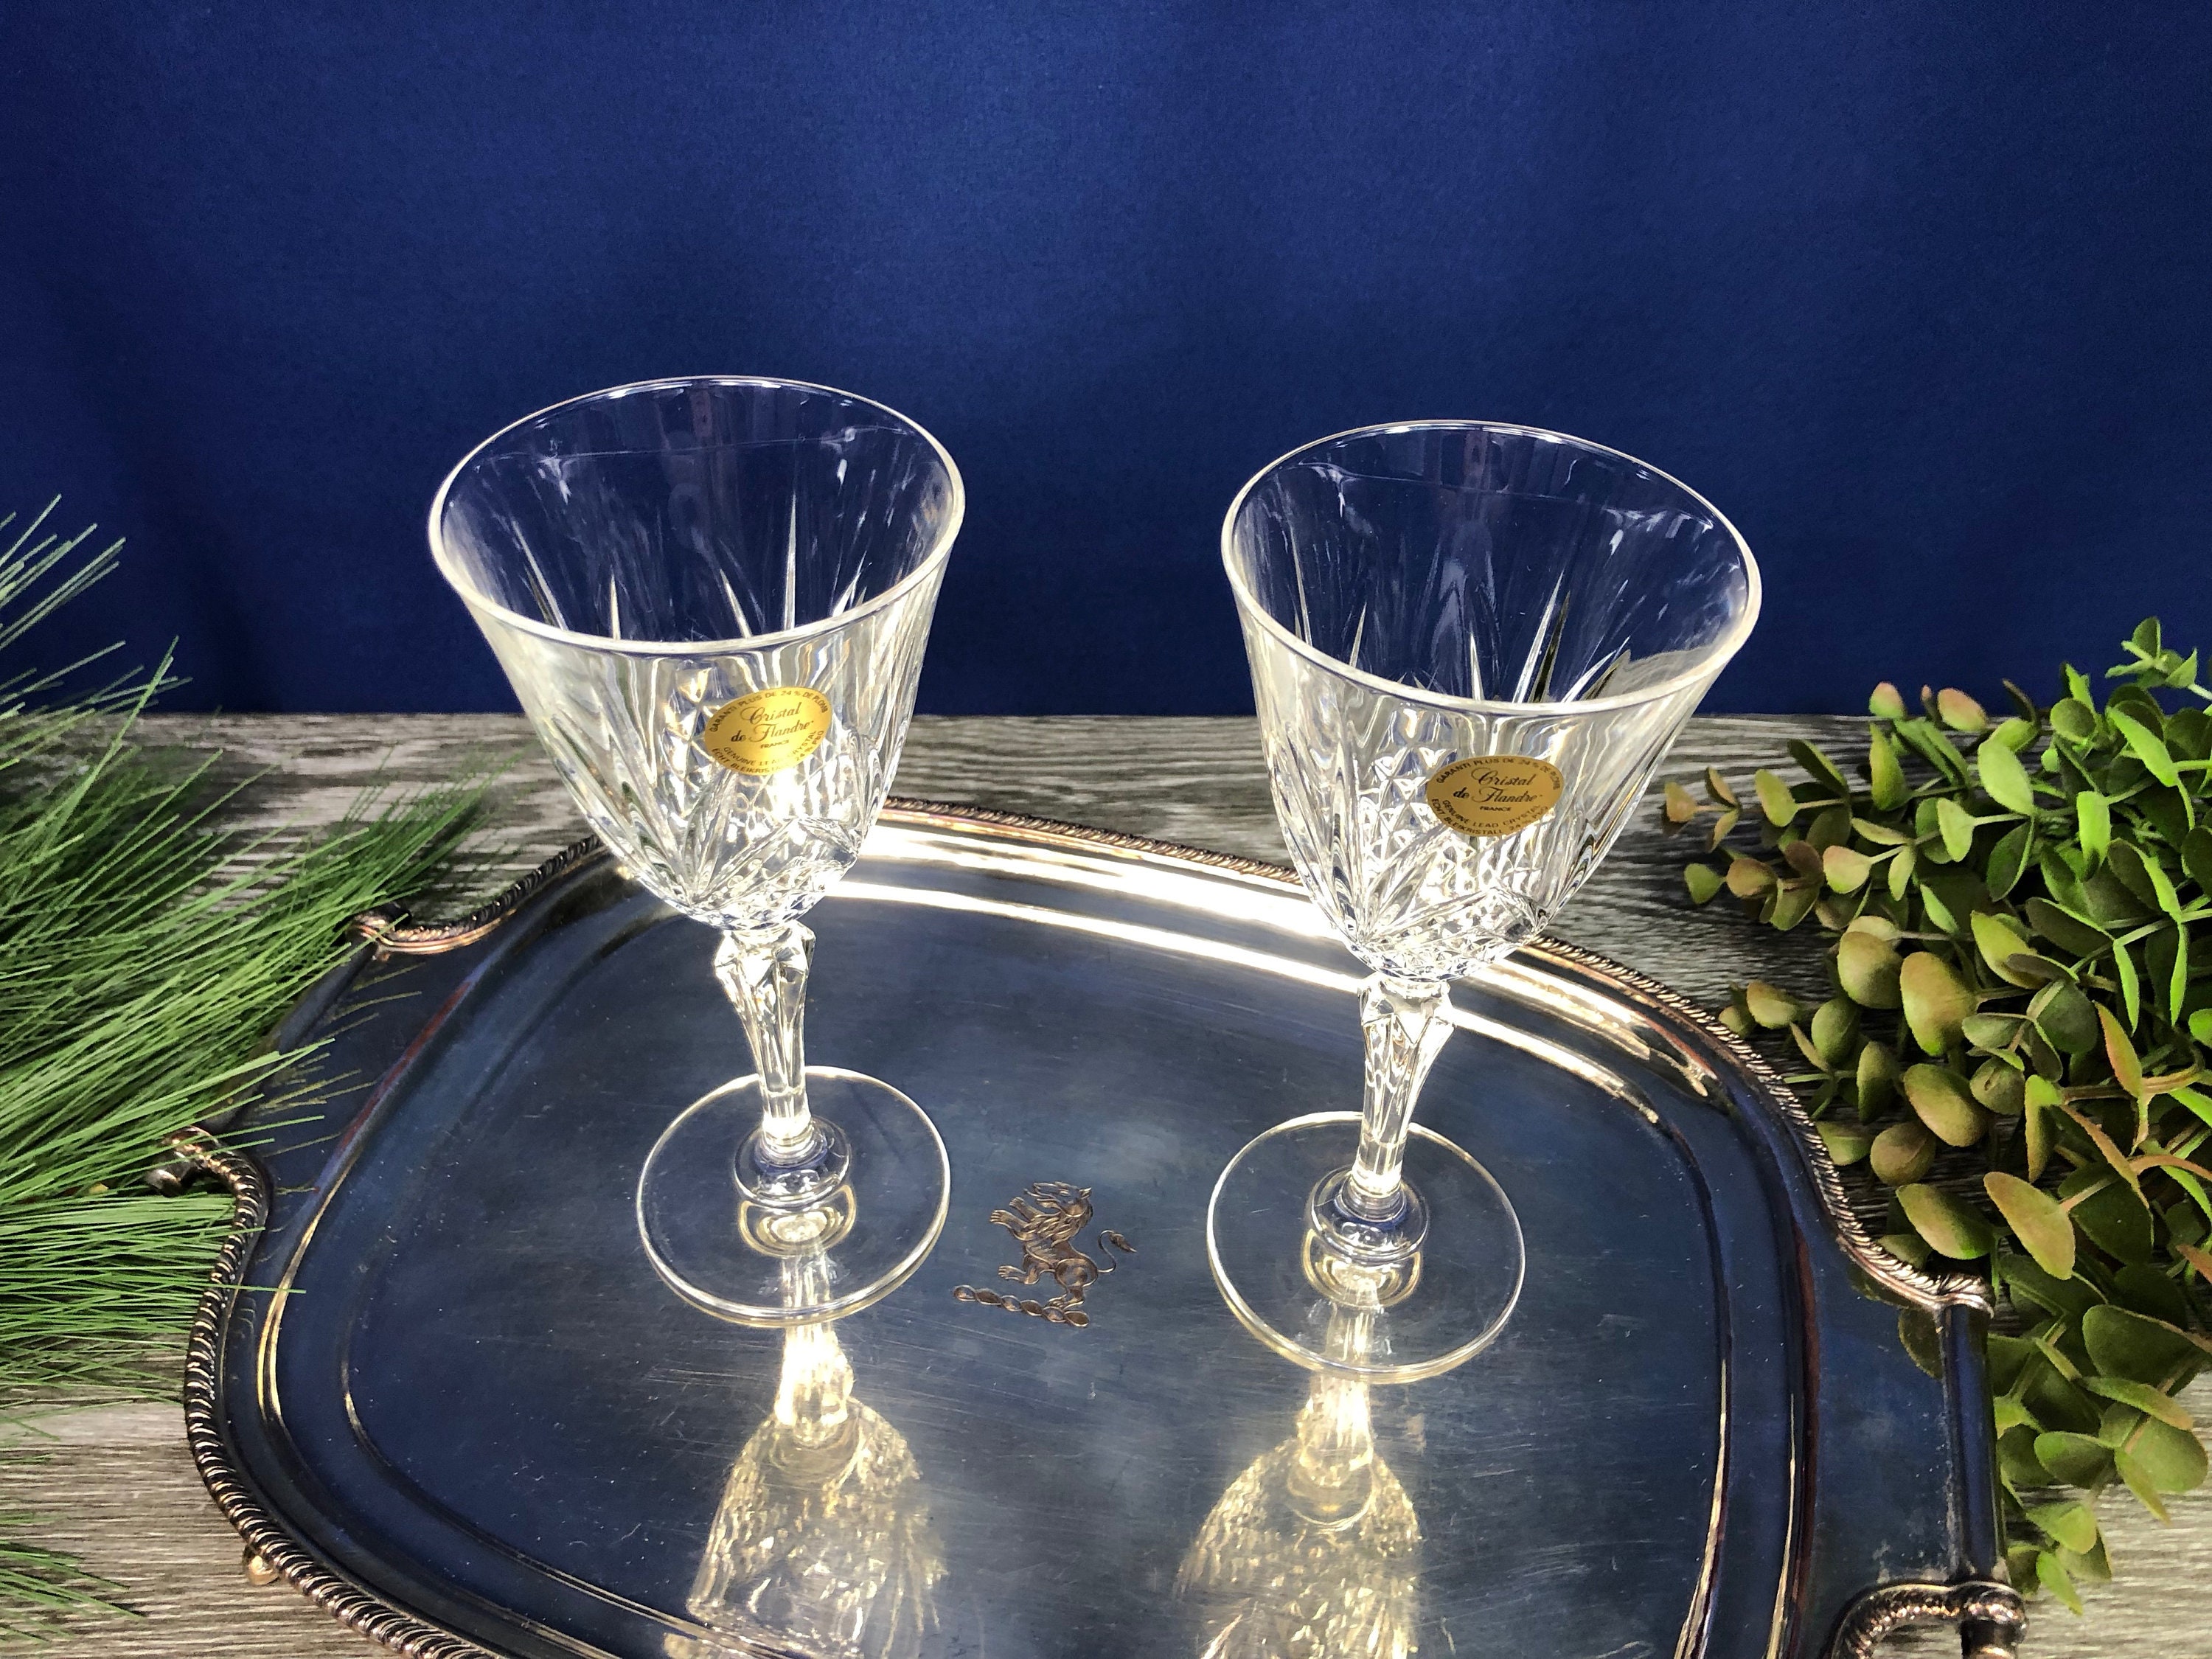 Cristal de Flandre France 24% Lead Crystal Wine Glasses 2 Sets of 4 -  Dauphine